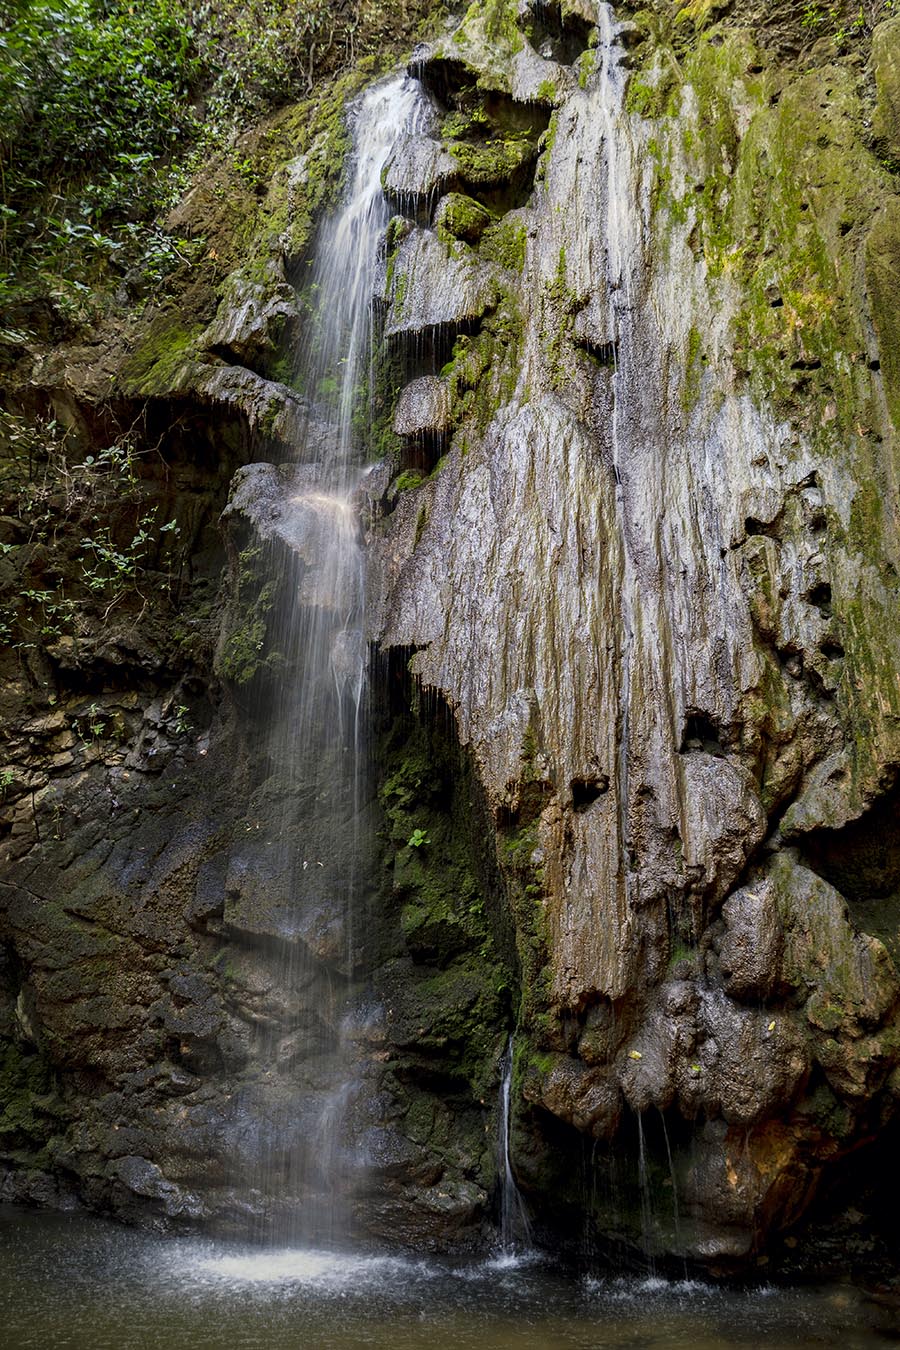 King-Louis-Waterfall-Osa-Peninsula-Costa-Rica